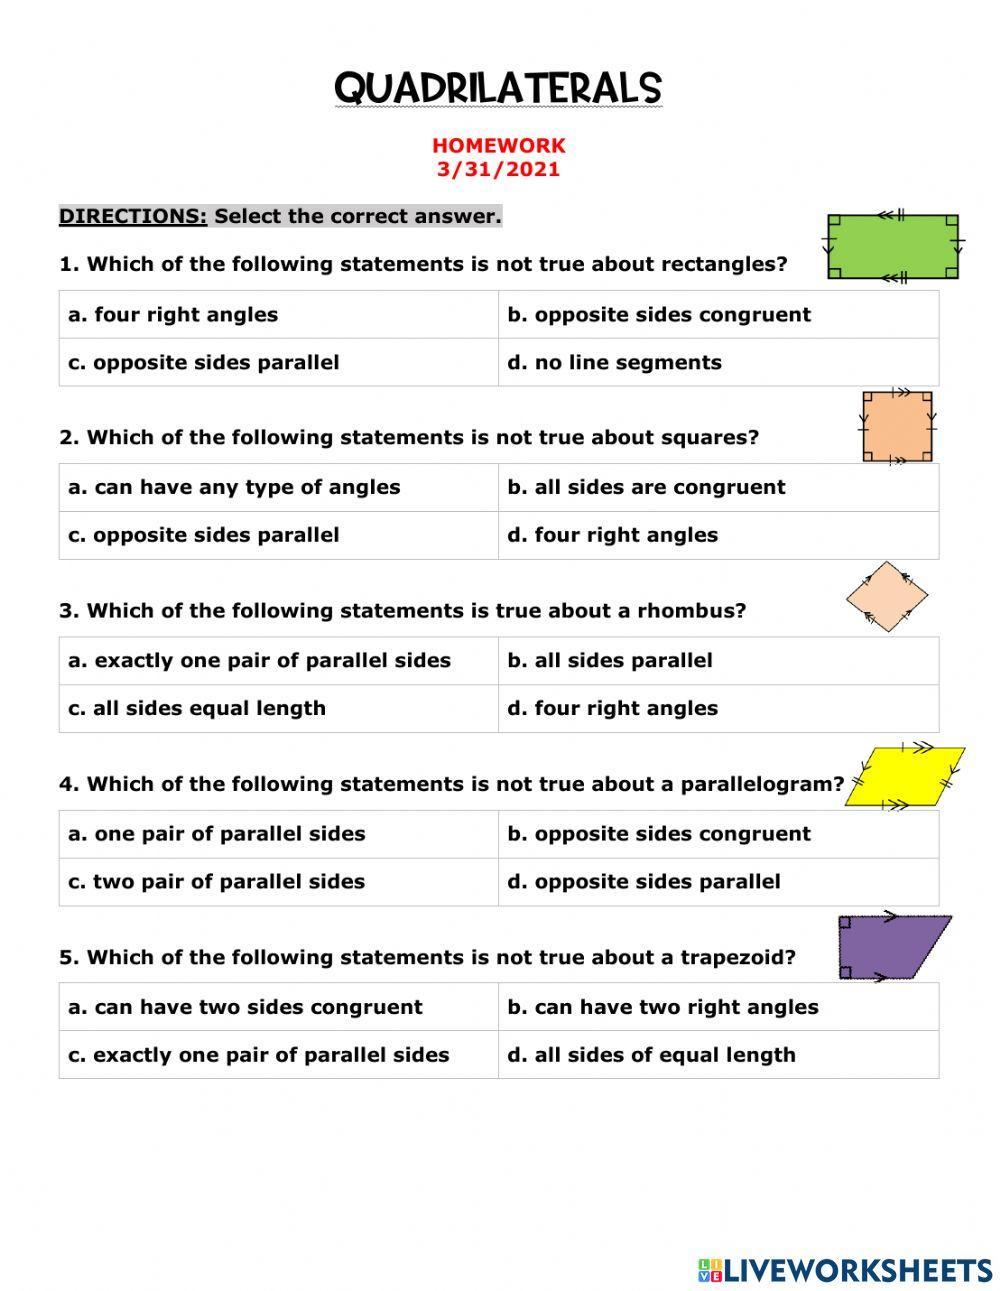 Quadrilaterals Homework -3